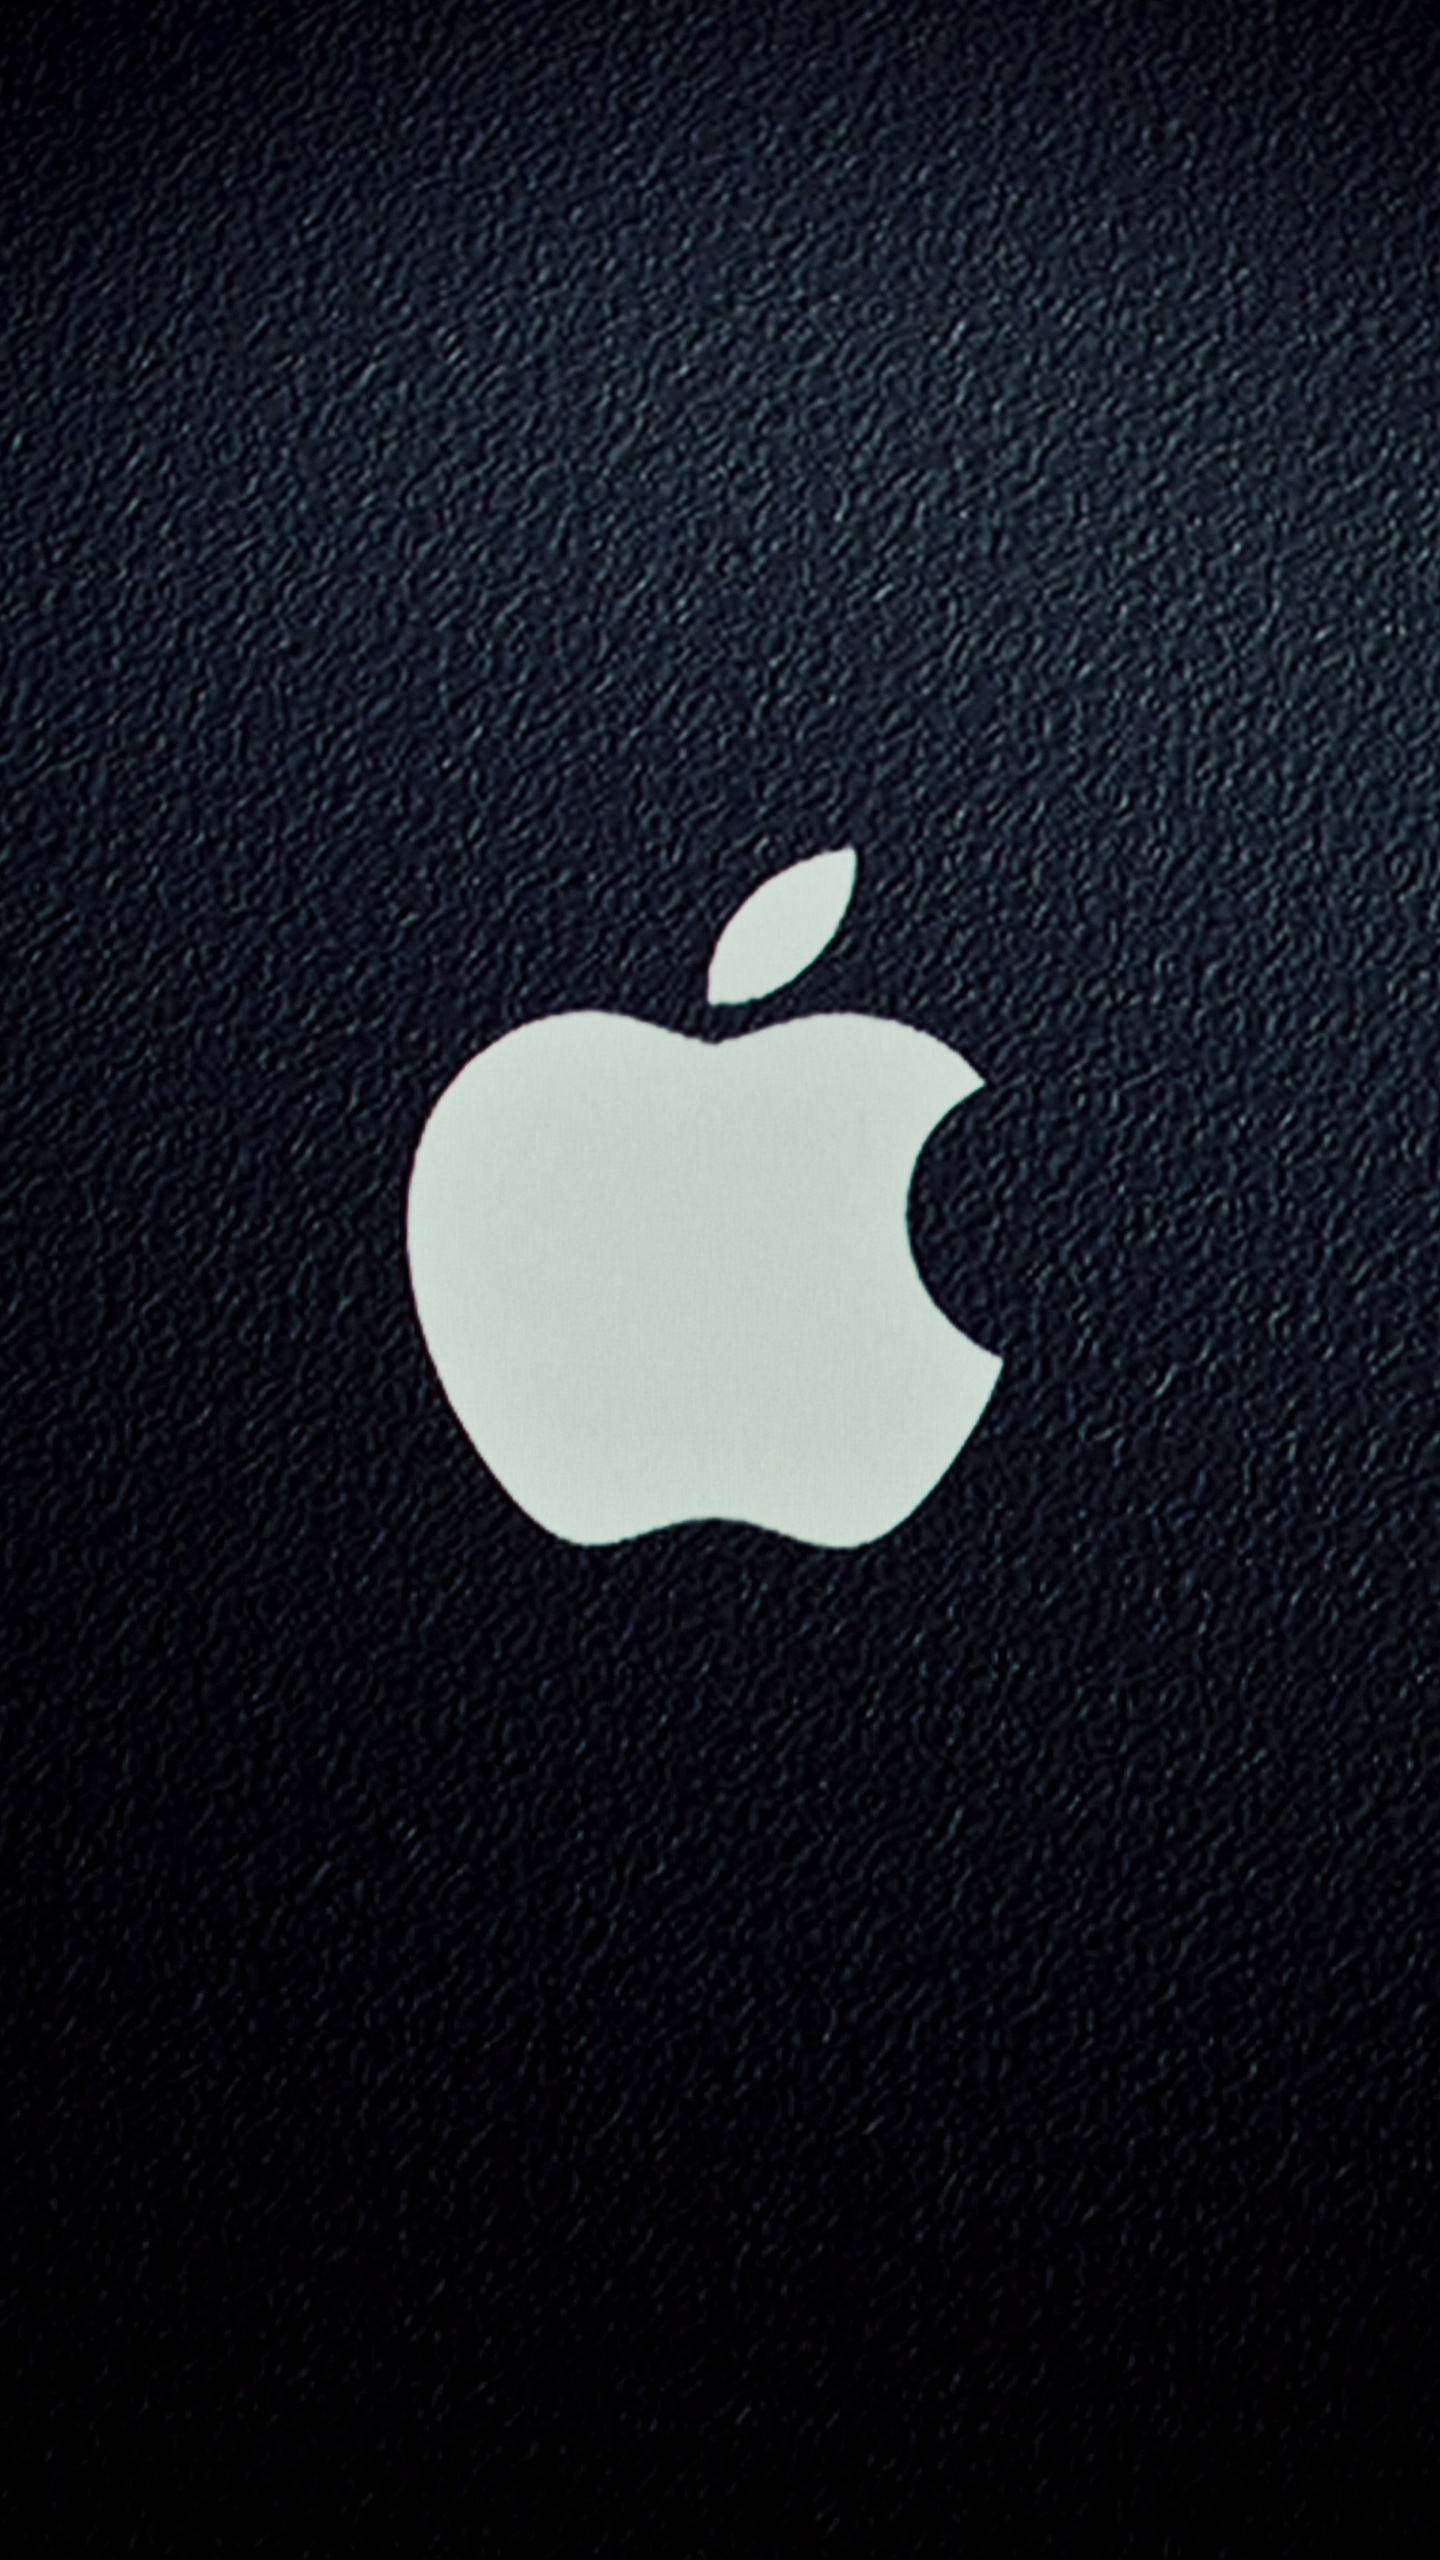 Загрузка айфона 11. Логотип Apple. Заставка на айфон оригинальная. Стильные обои на телефон. Яблоко айфон.